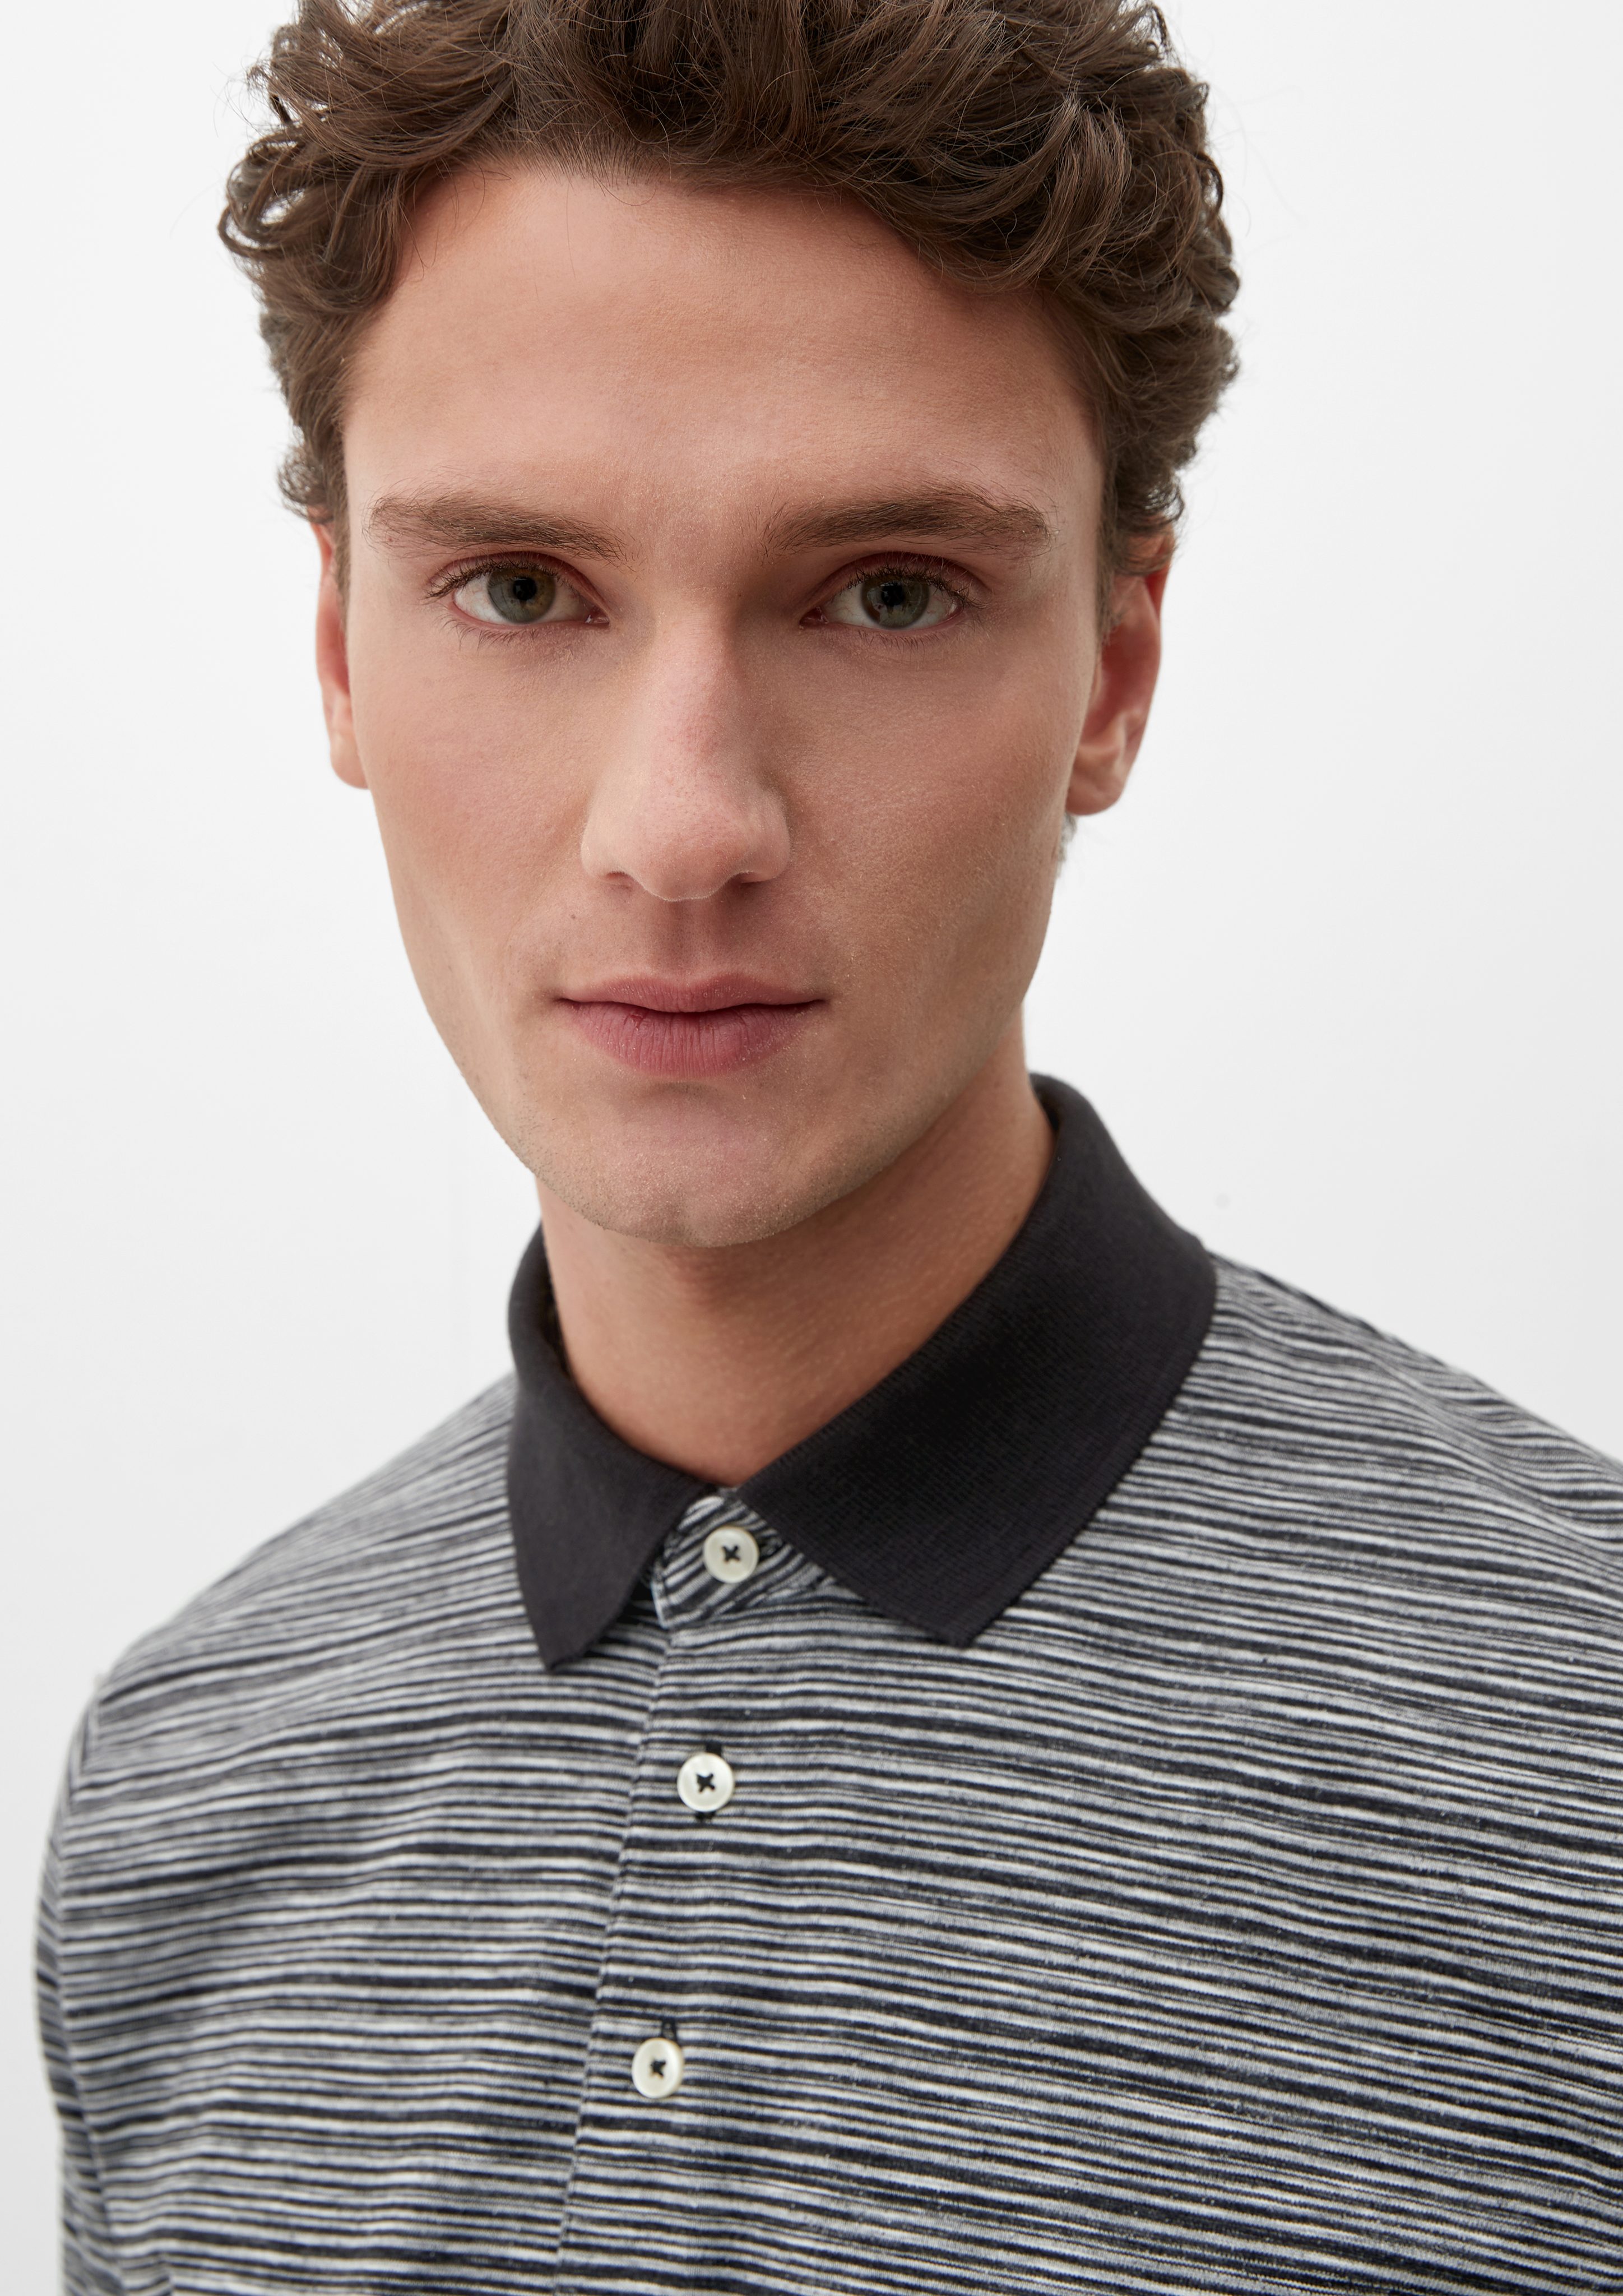 Kurzarmshirt Poloshirt s.Oliver Blende mit schwarz Streifenmuster